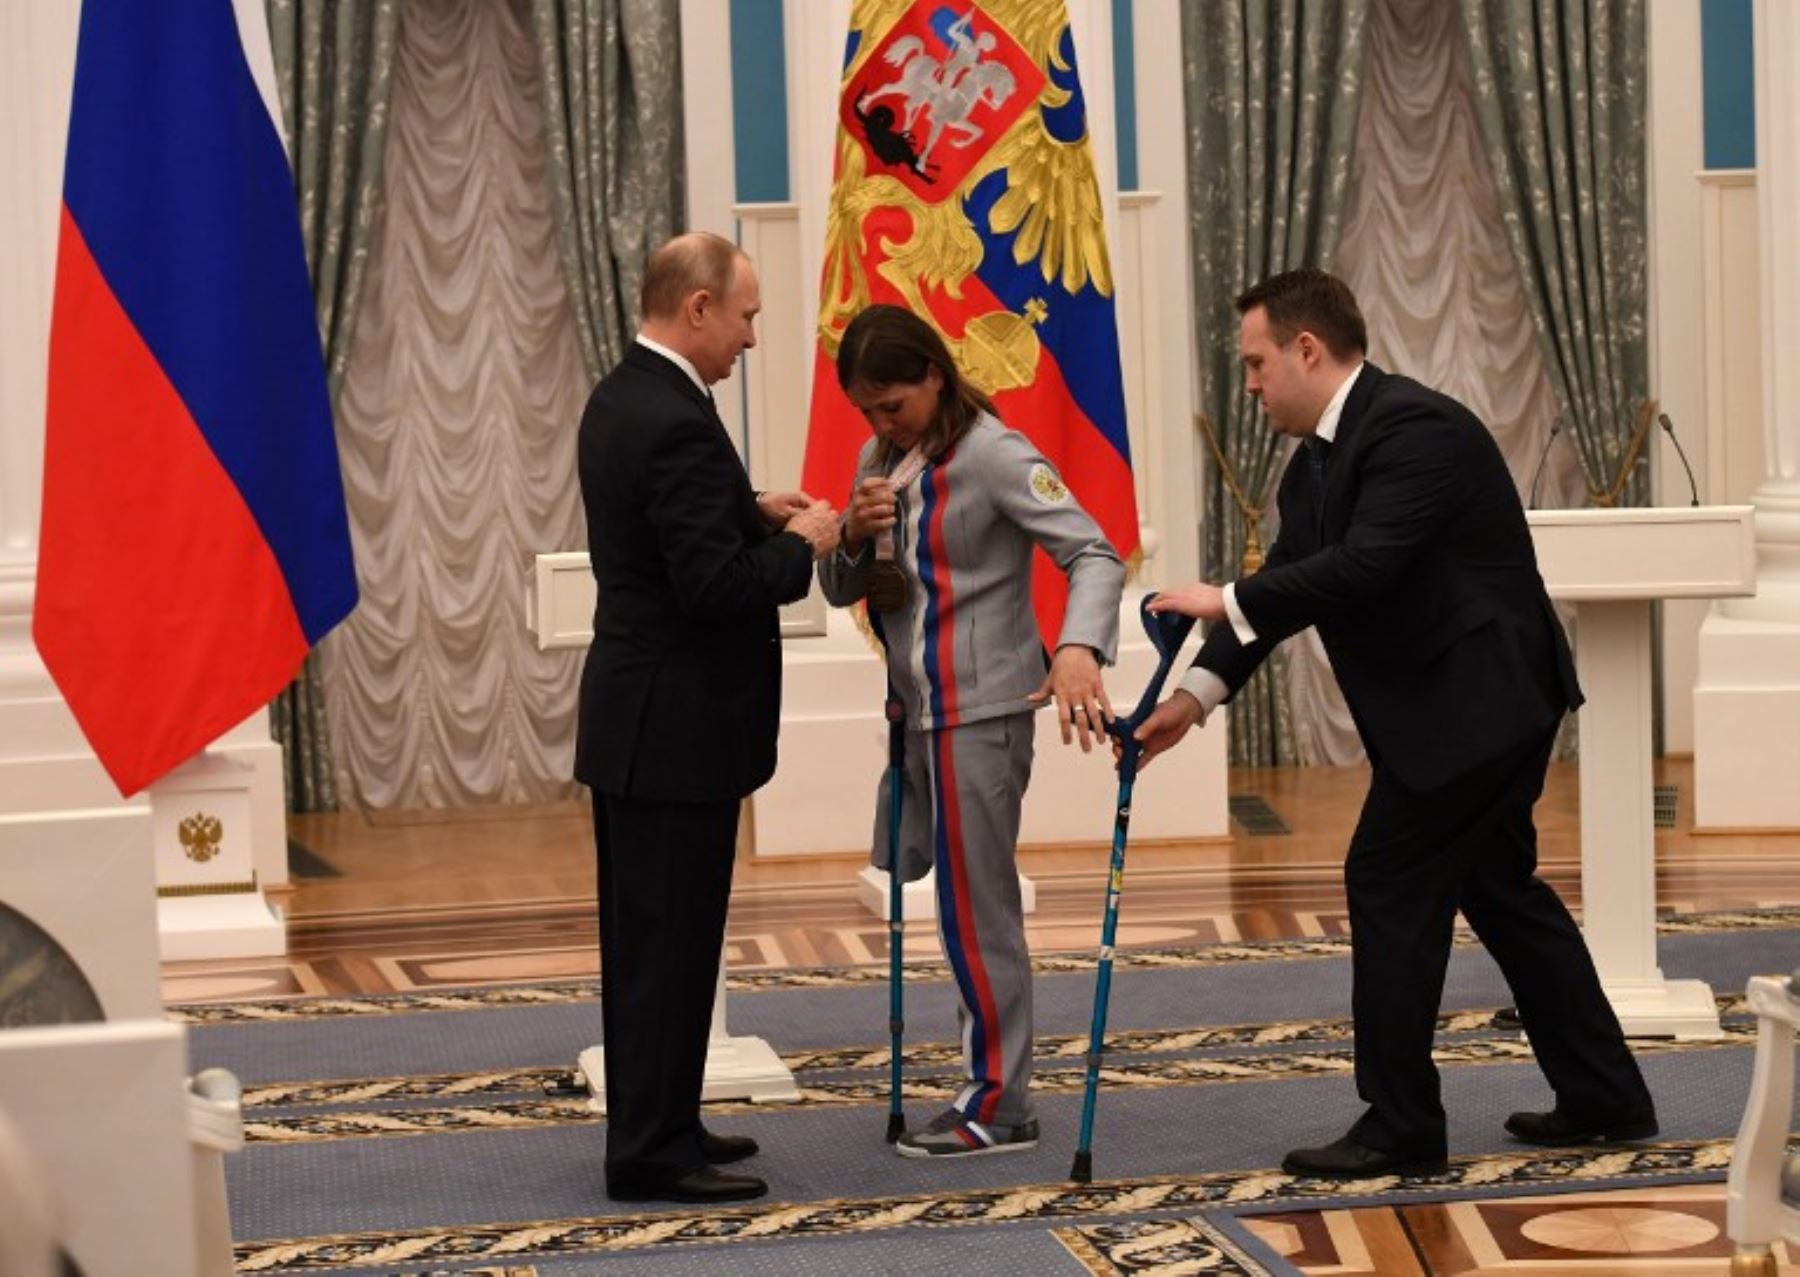 El presidente ruso, Vladimir Putin entrega un galardón estatal a Irina Gulyaeva, ganadora de la medalla en los Juegos Paralímpicos de Invierno Pyeongchang de 2018.Foto:AFP